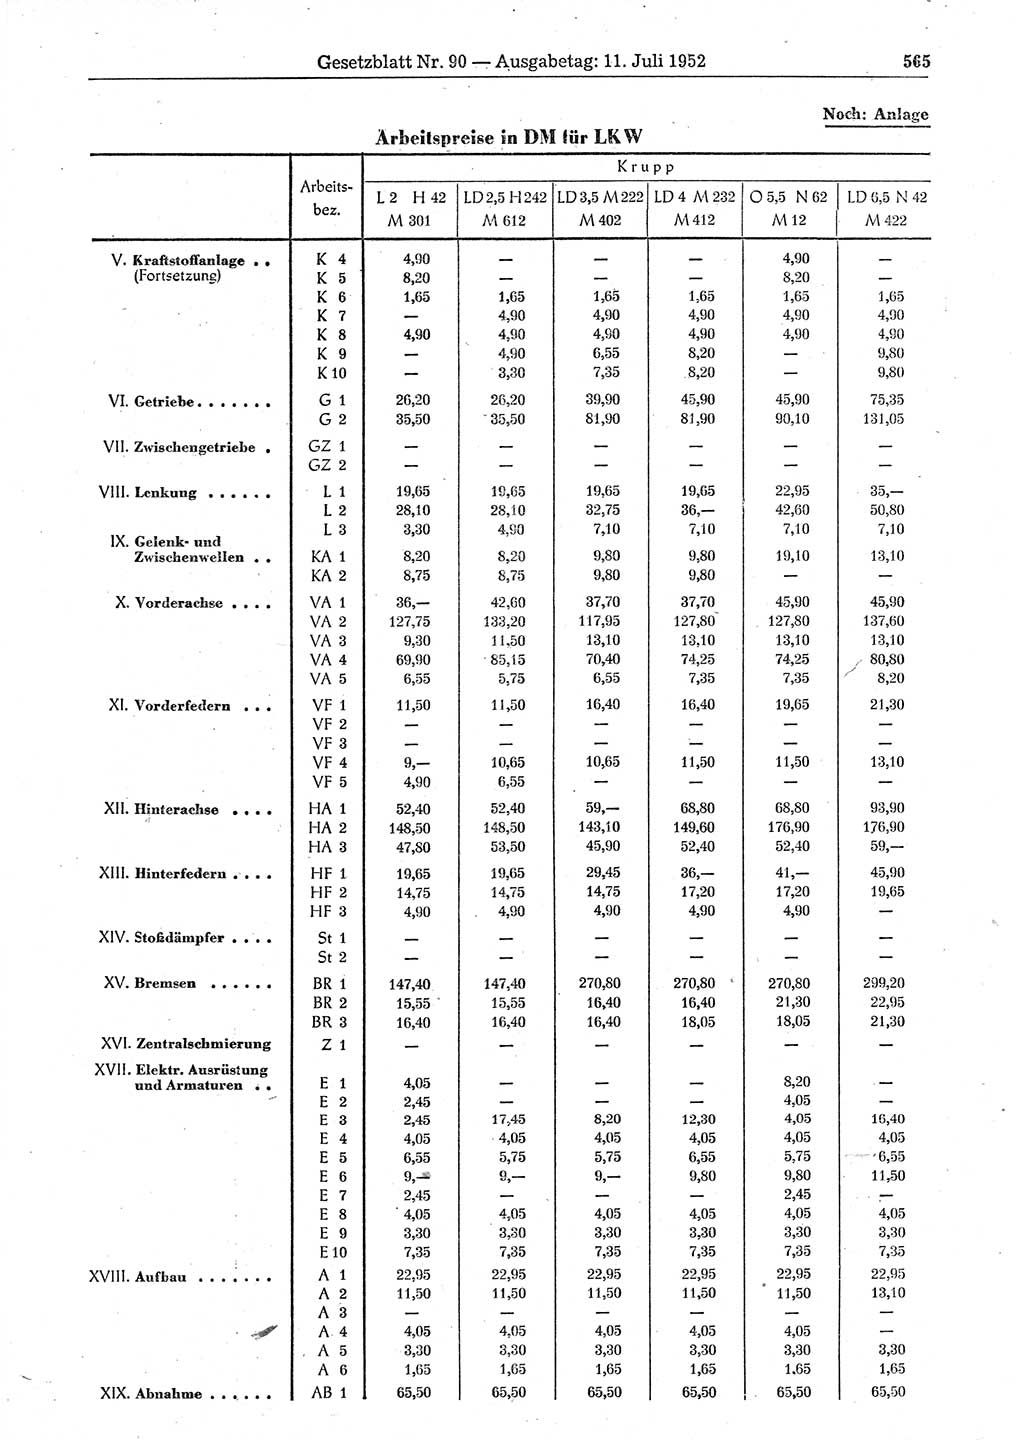 Gesetzblatt (GBl.) der Deutschen Demokratischen Republik (DDR) 1952, Seite 565 (GBl. DDR 1952, S. 565)